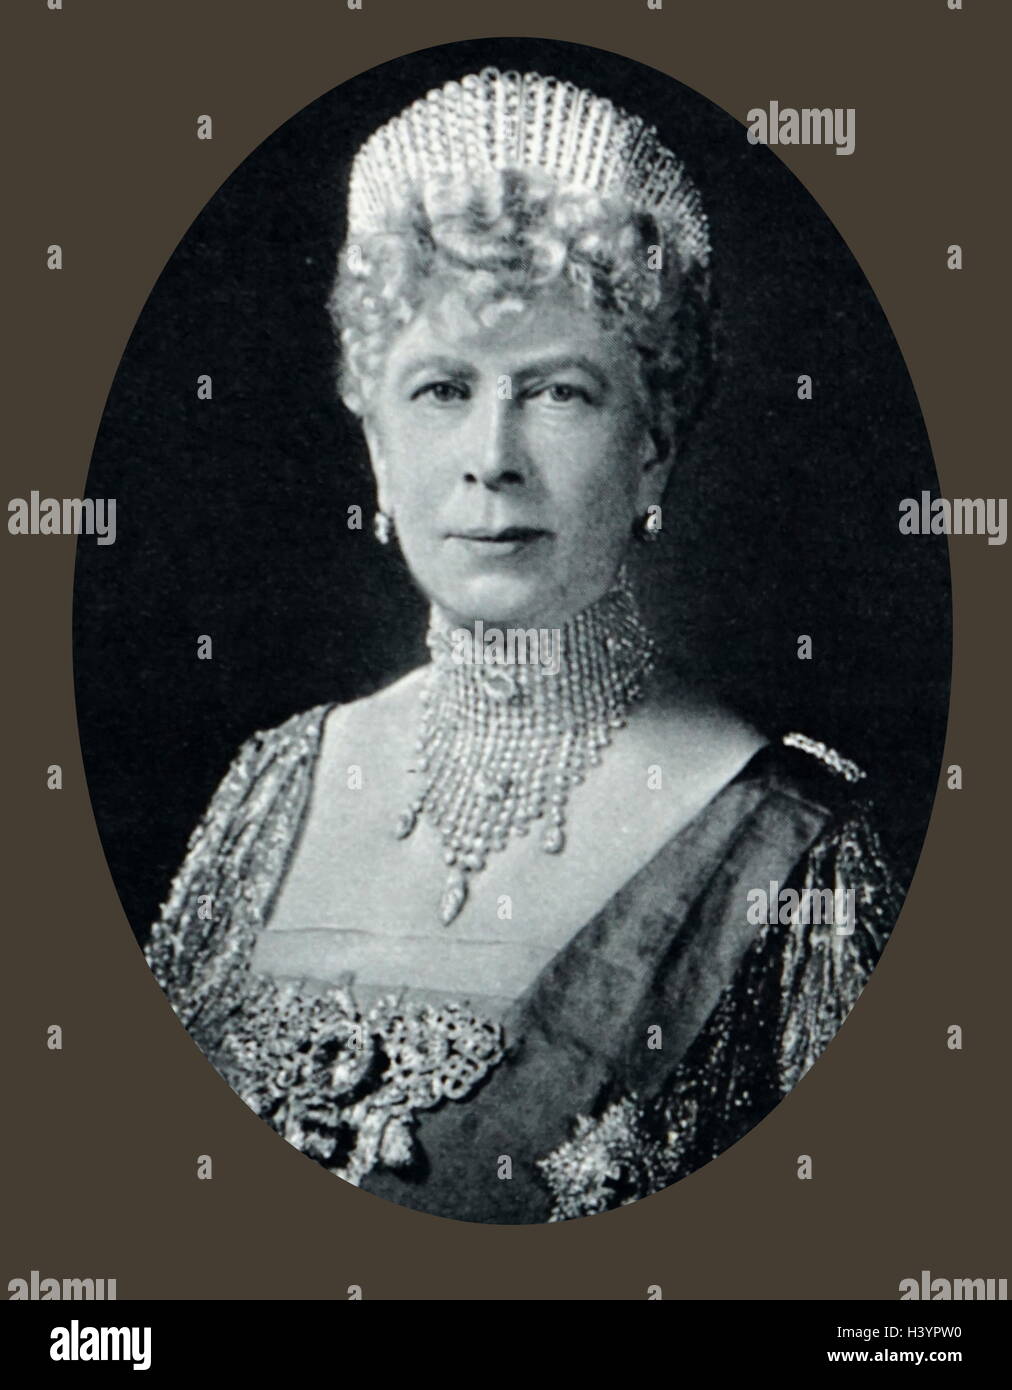 Queen Mary (1867 - 1953) fu regina consorte del Regno Unito e i domini britannici e Imperatrice consorte di India, come la moglie di King-Emperor George V. Foto Stock